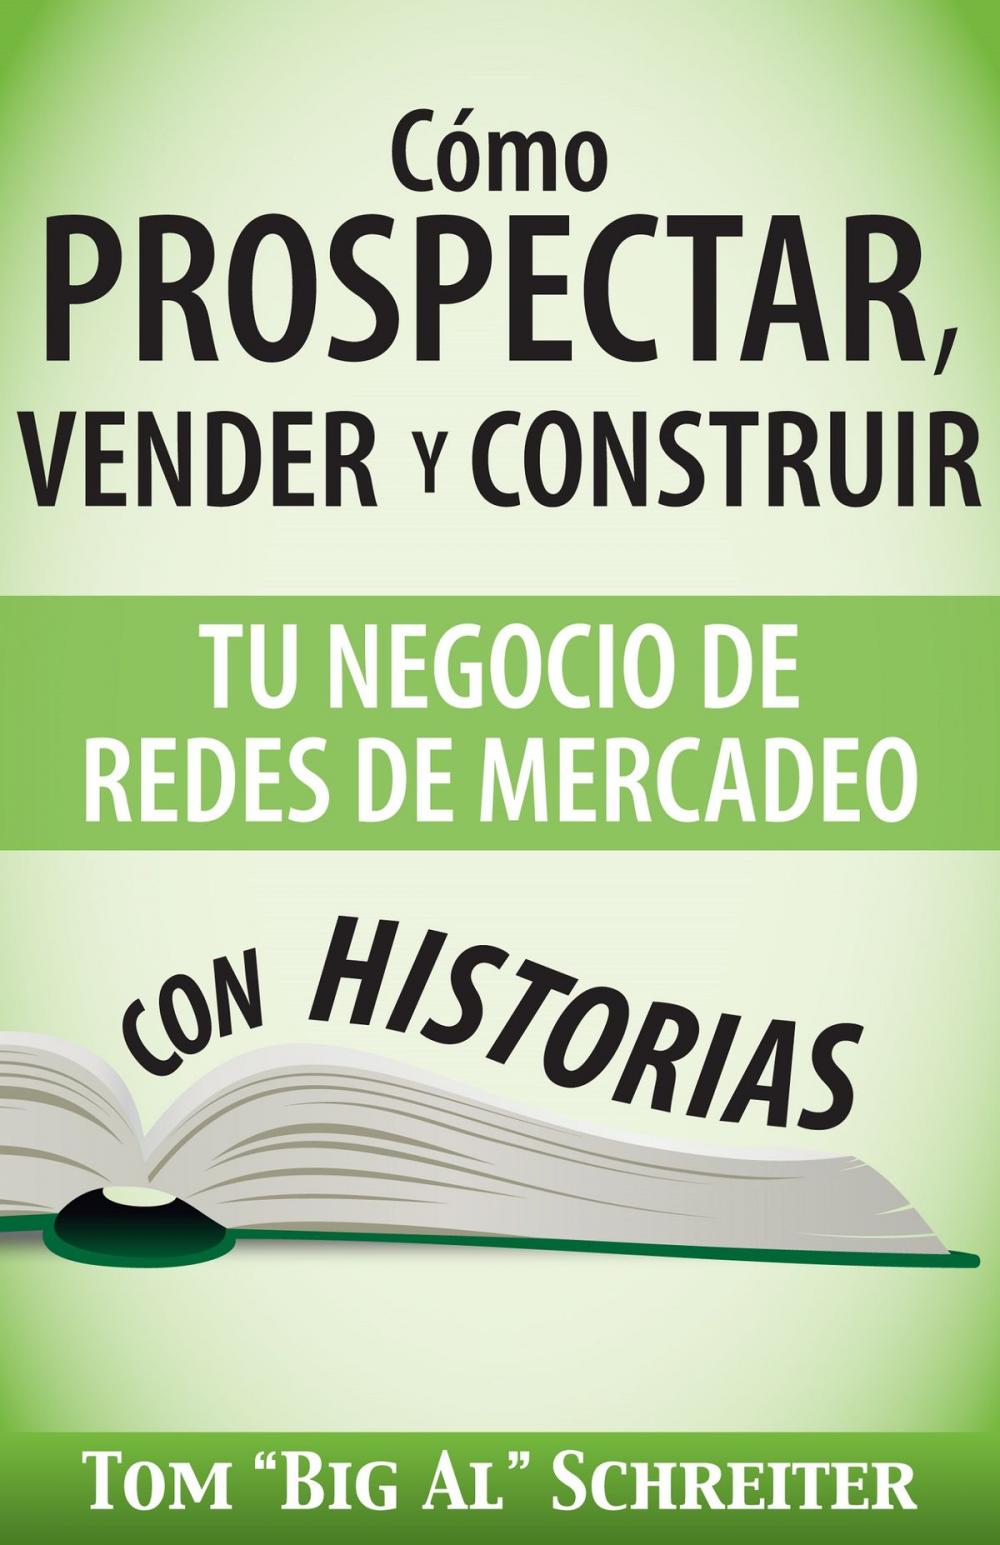 Big bigCover of Cómo Prospectar, Vender Y Construir Tu Negocio De Redes De Mercadeo Con Historias